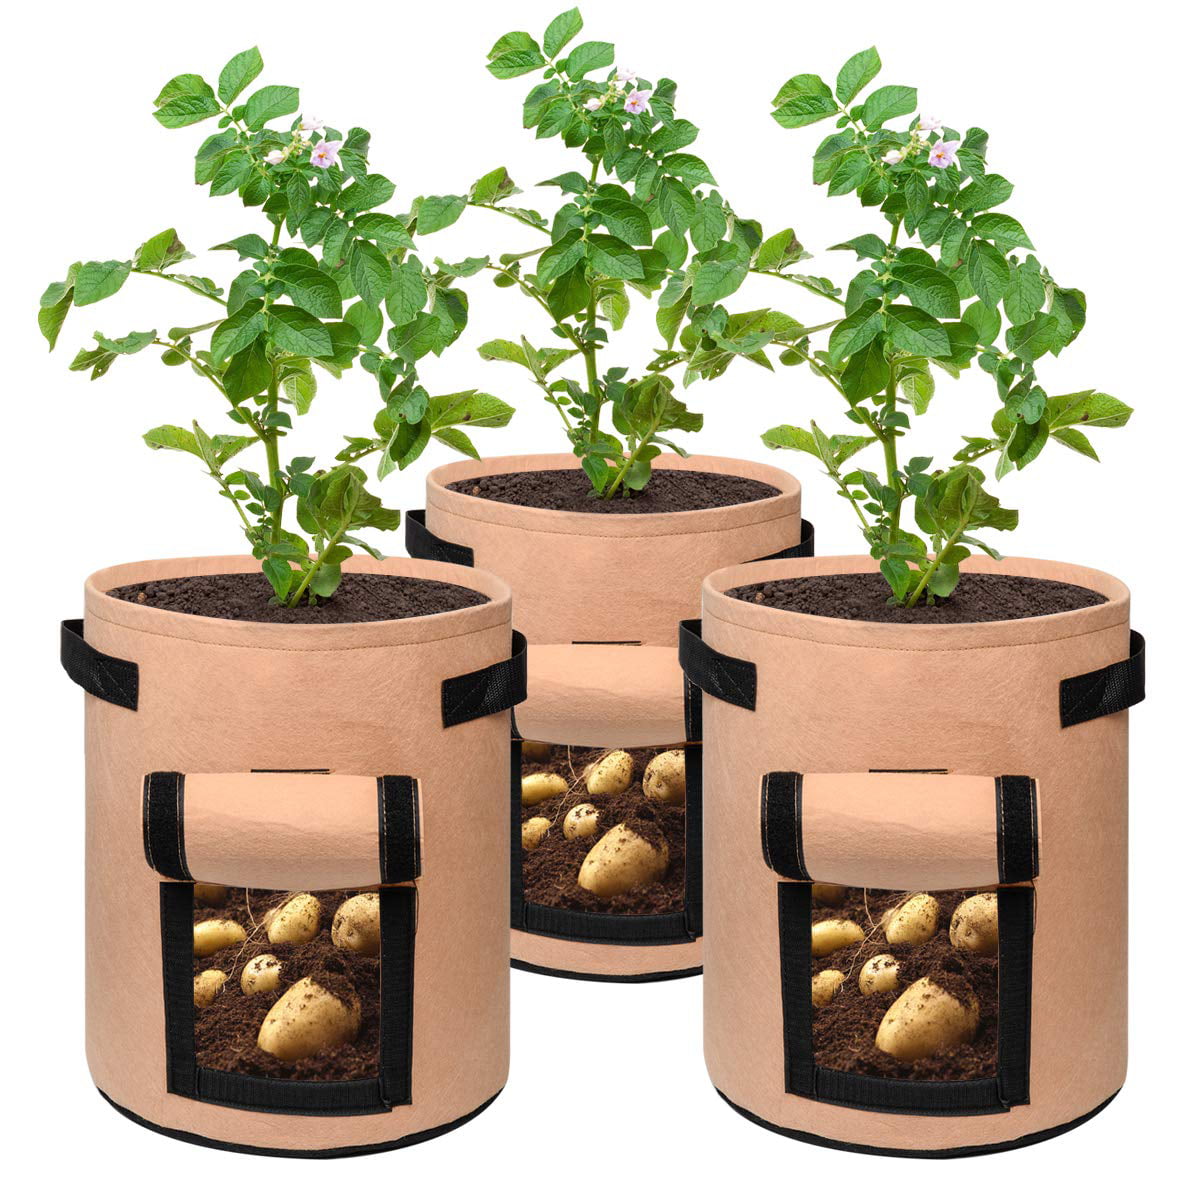 1-8Pc 7/10Gallon Plant Grow Bags Potato Grow Bags Reusable Non-Woven Fabric Pots 